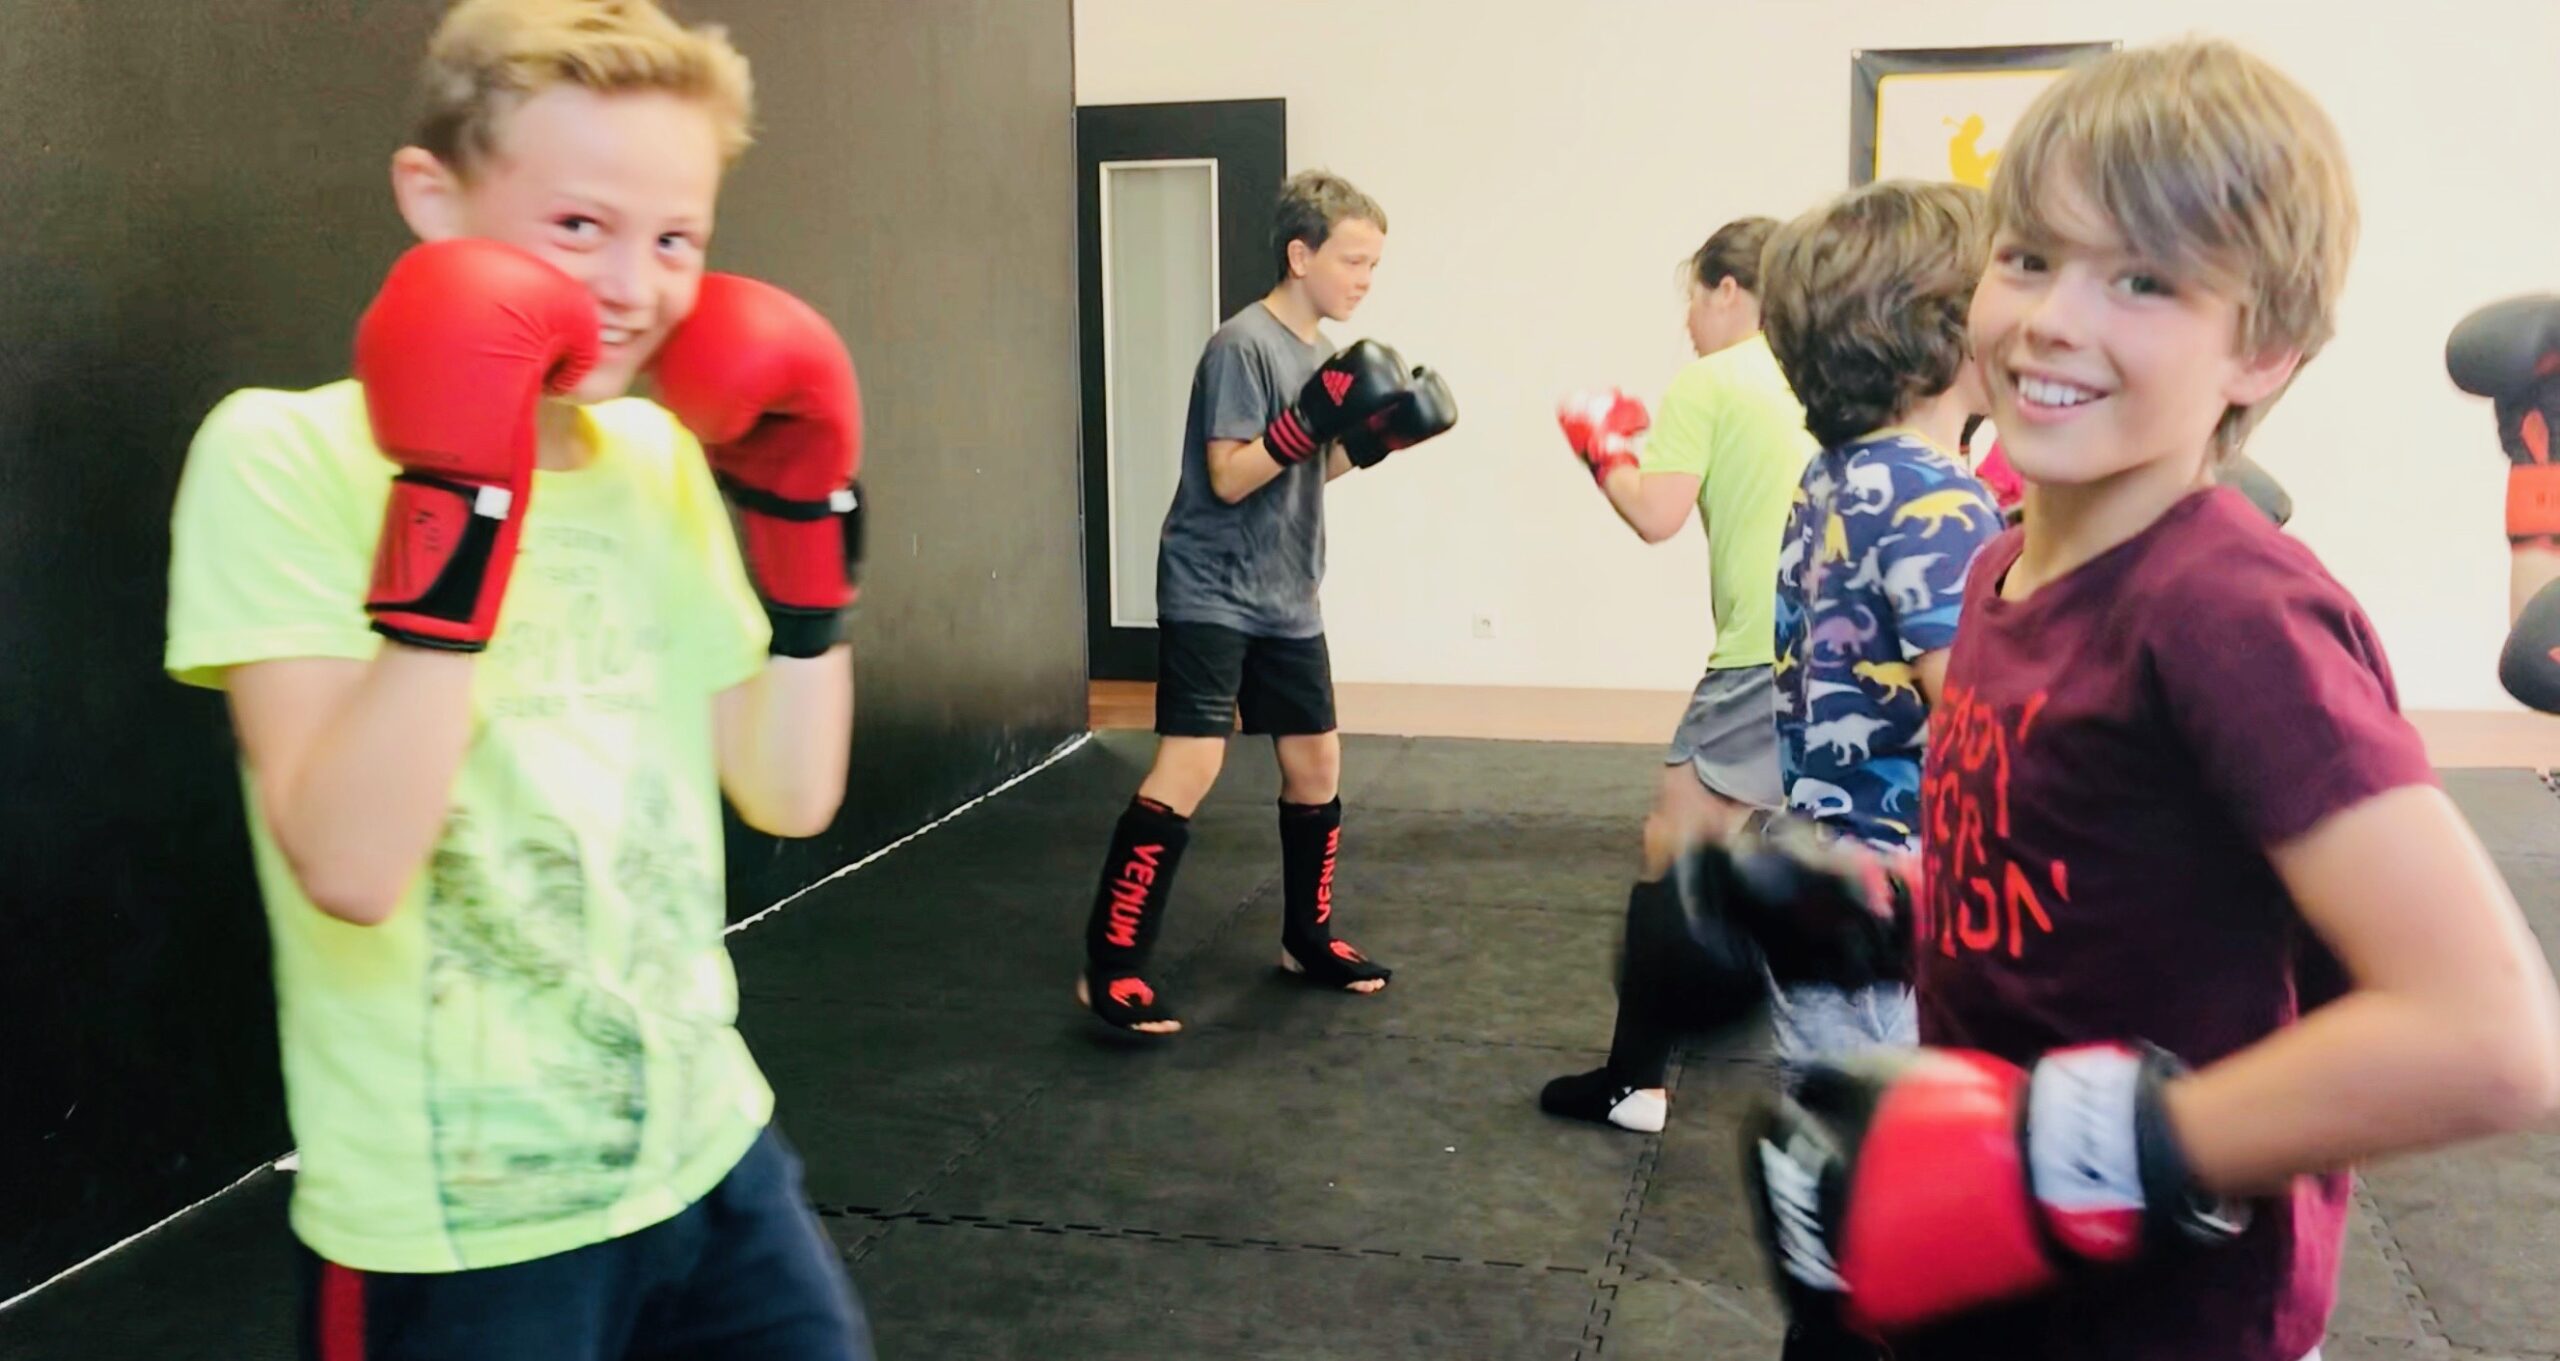 Kids Boxing 11-13 ans - Boxing club de Divonne Les Bains